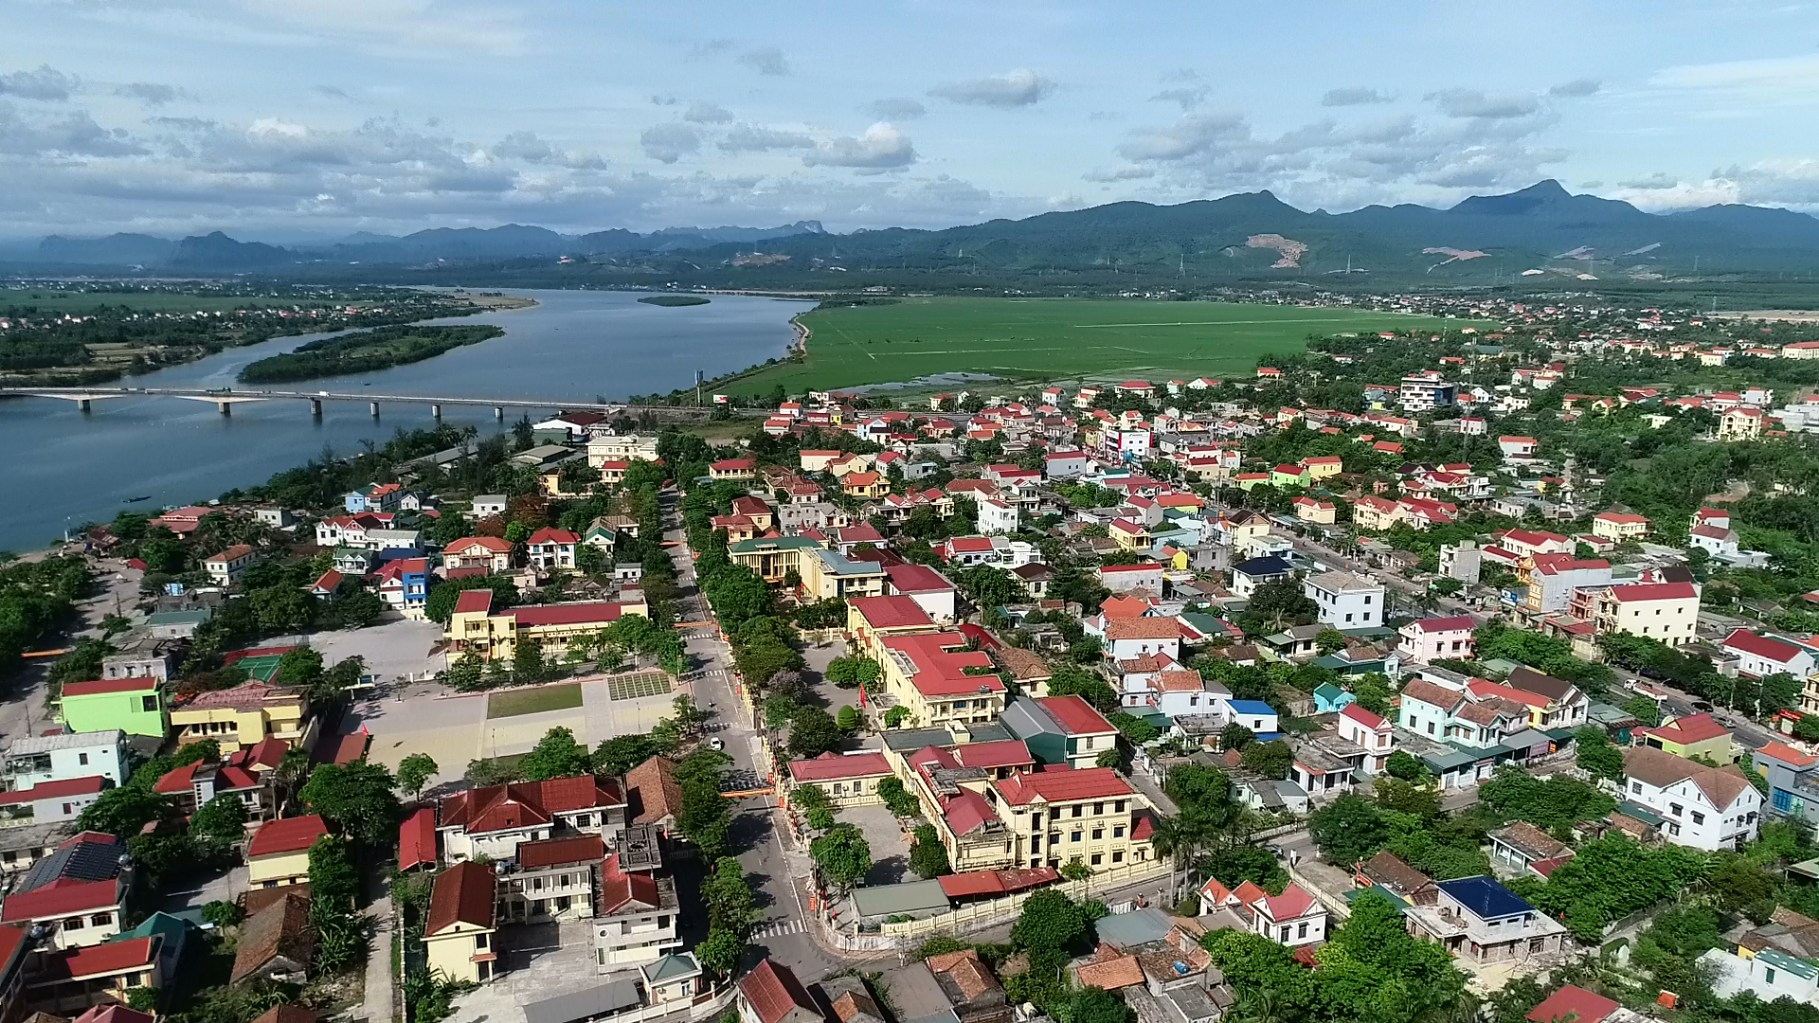 Kết cấu hạ tầng được đầu tư đồng bộ tạo điều kiện đưa Quảng Ninh phát triển nhanh, bền vững.